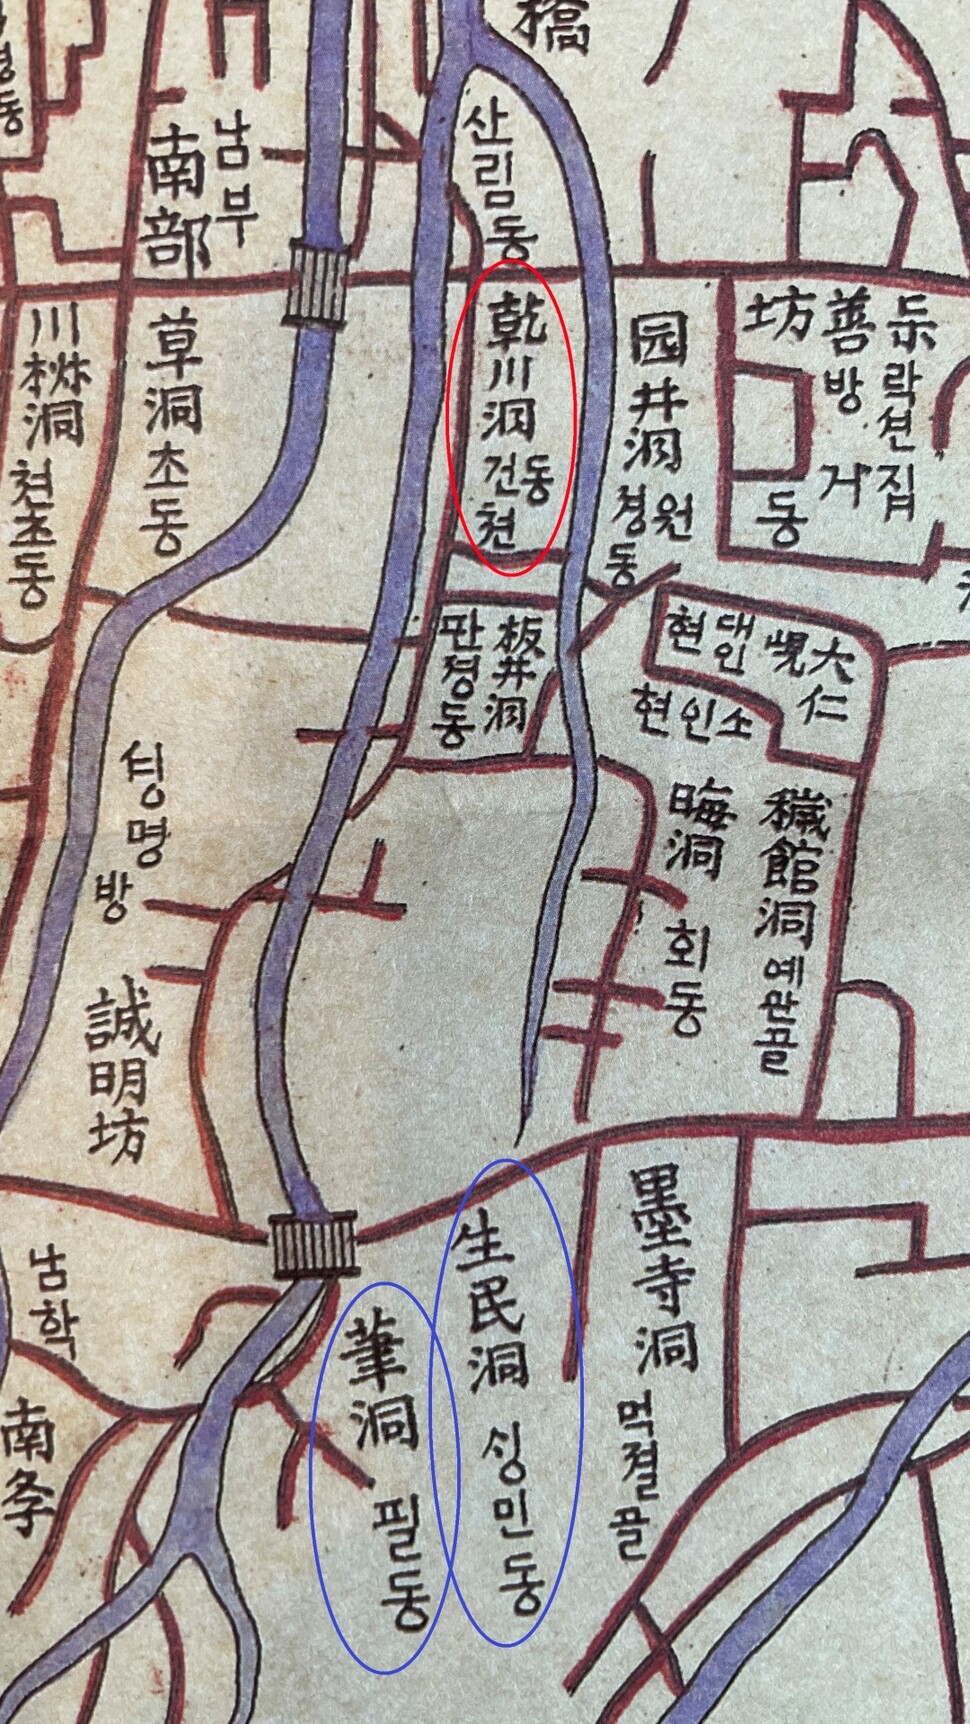 1901년 한성부 한글 지도를 보면 필동천과 생민동천 사이에 건천동이 있다.